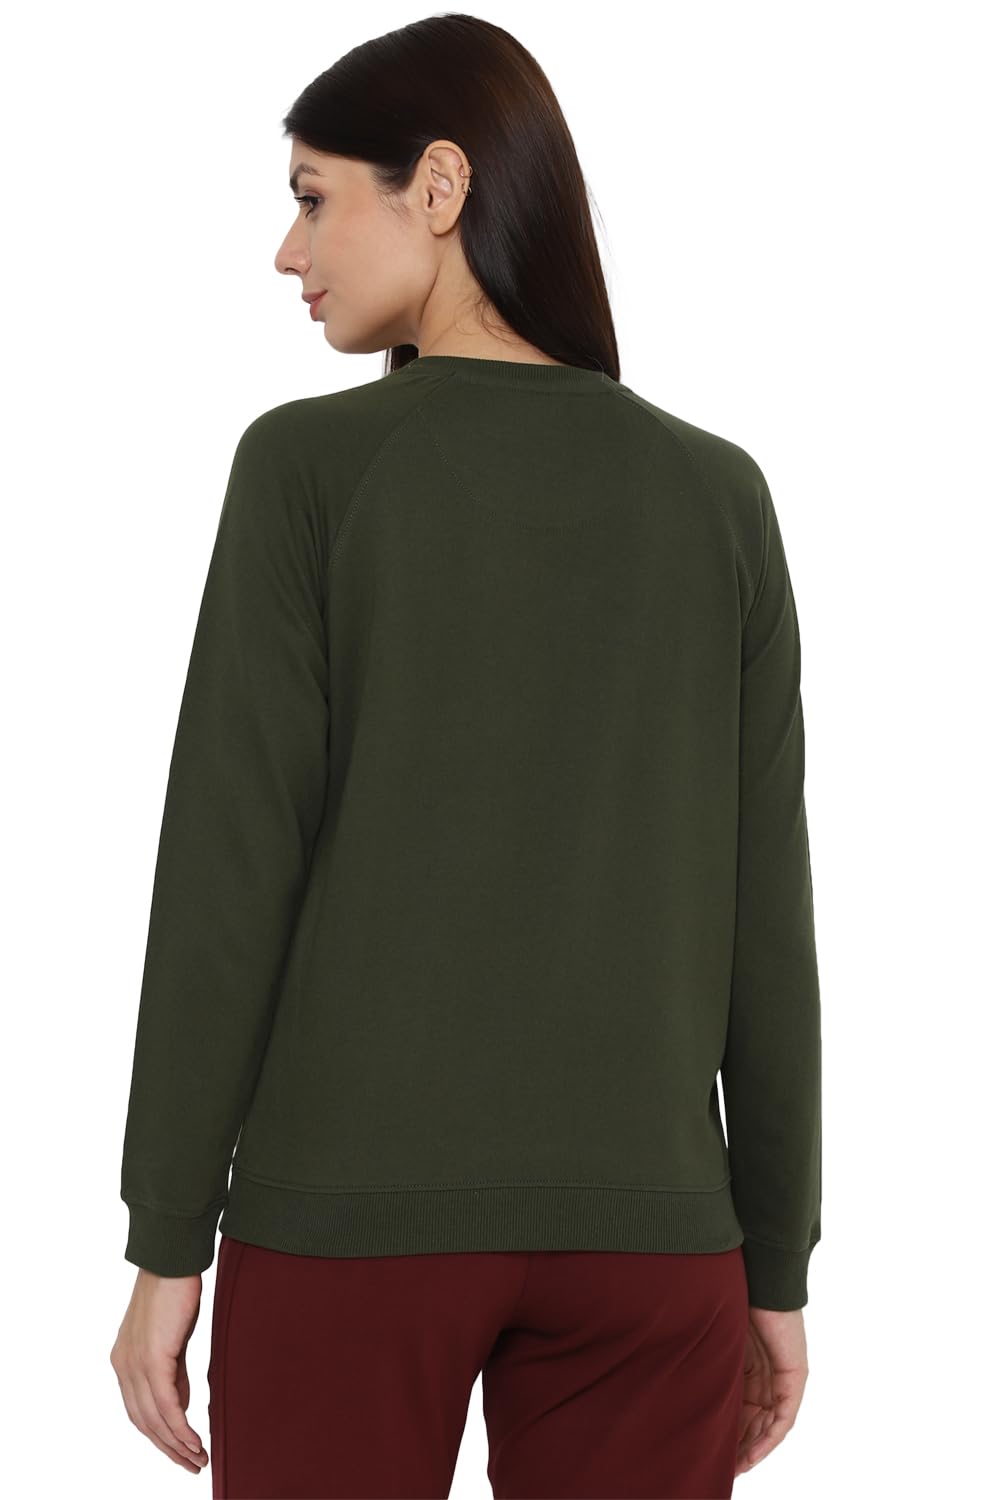 Allen Solly Women's Sweatshirts Green 